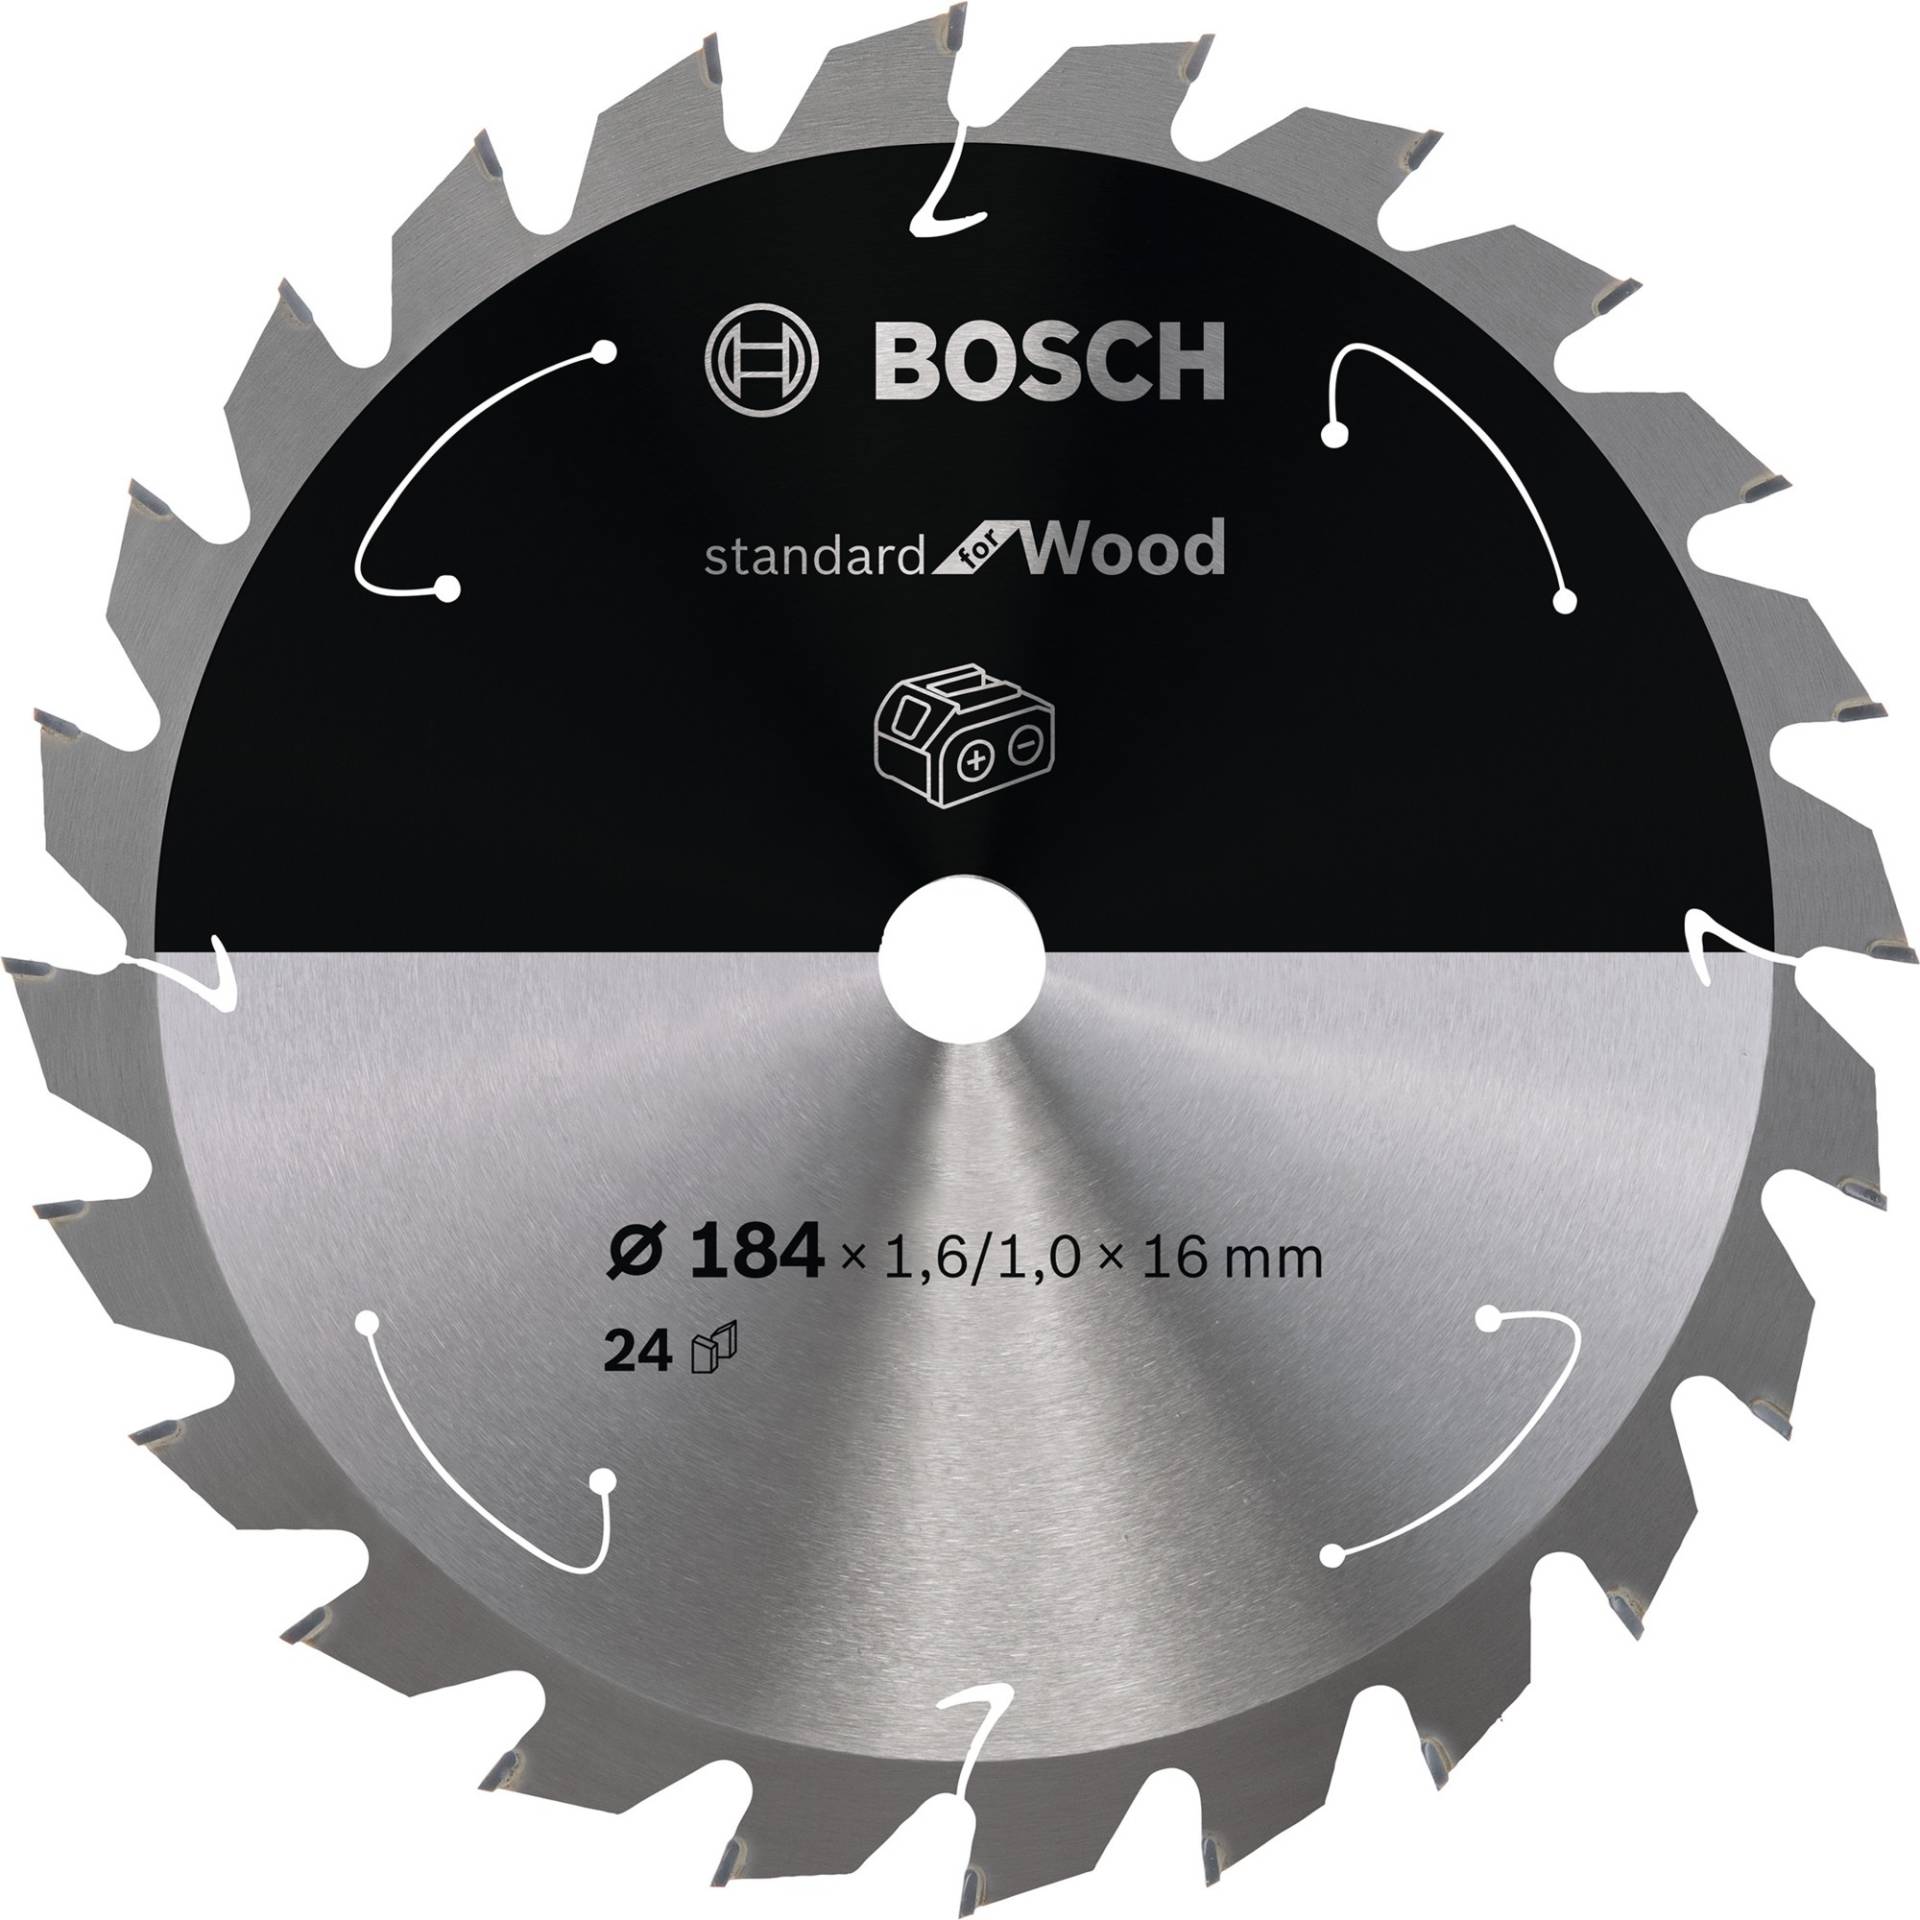 Kreissägeblatt Standard for Wood, Ø 184mm, 24Z von Bosch